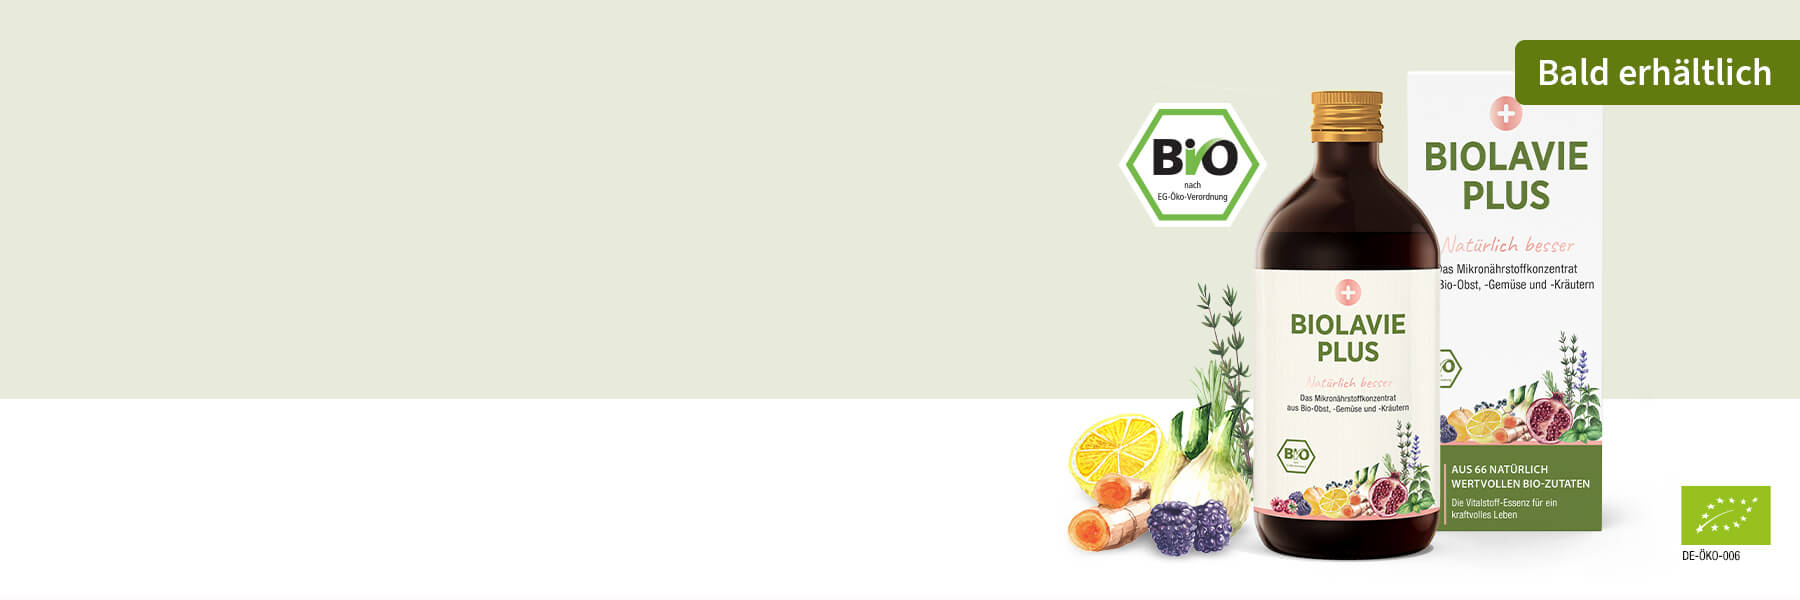 Zeigt die Flasche und die Umverpackung von Biolavie PLUS. Links an der Flasche sind gezeichnete Früchte, Obst und Gemüse abgebildet. Der Hintergrund ist grün und rechts an der Umverpackung ist ein Störer mit "Bald erhältlich".